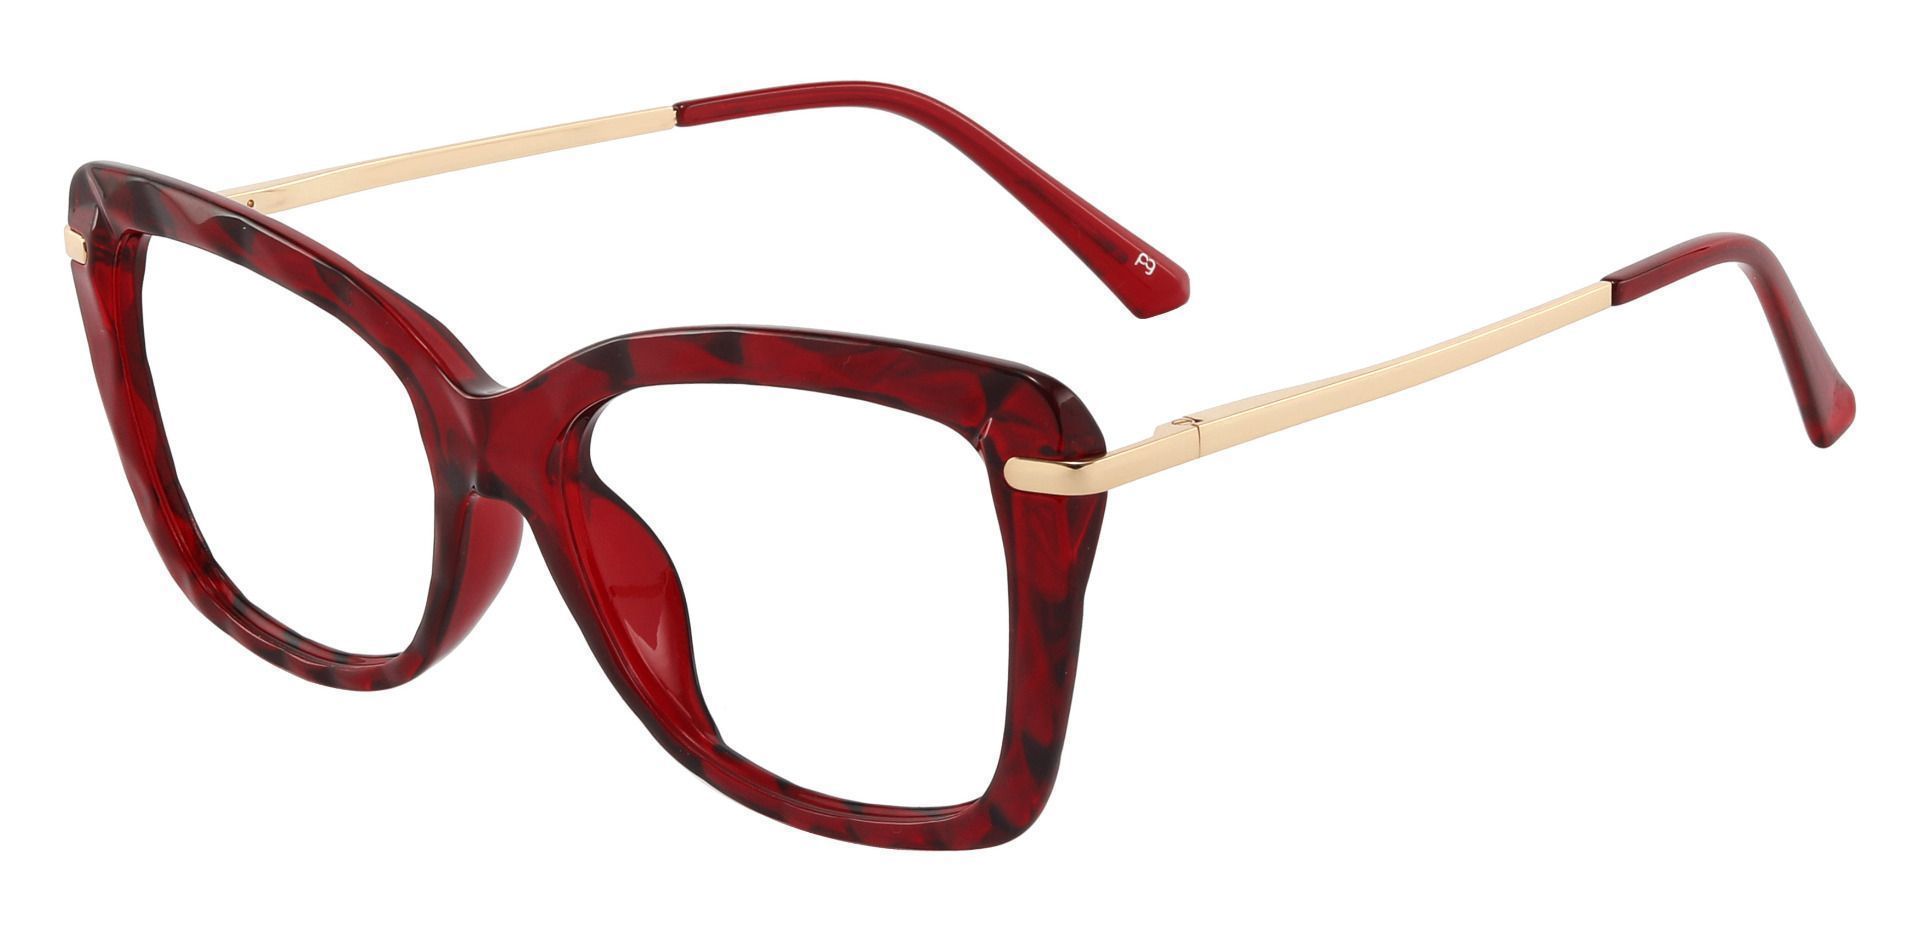 Shoshanna Rectangle Progressive Glasses - Red